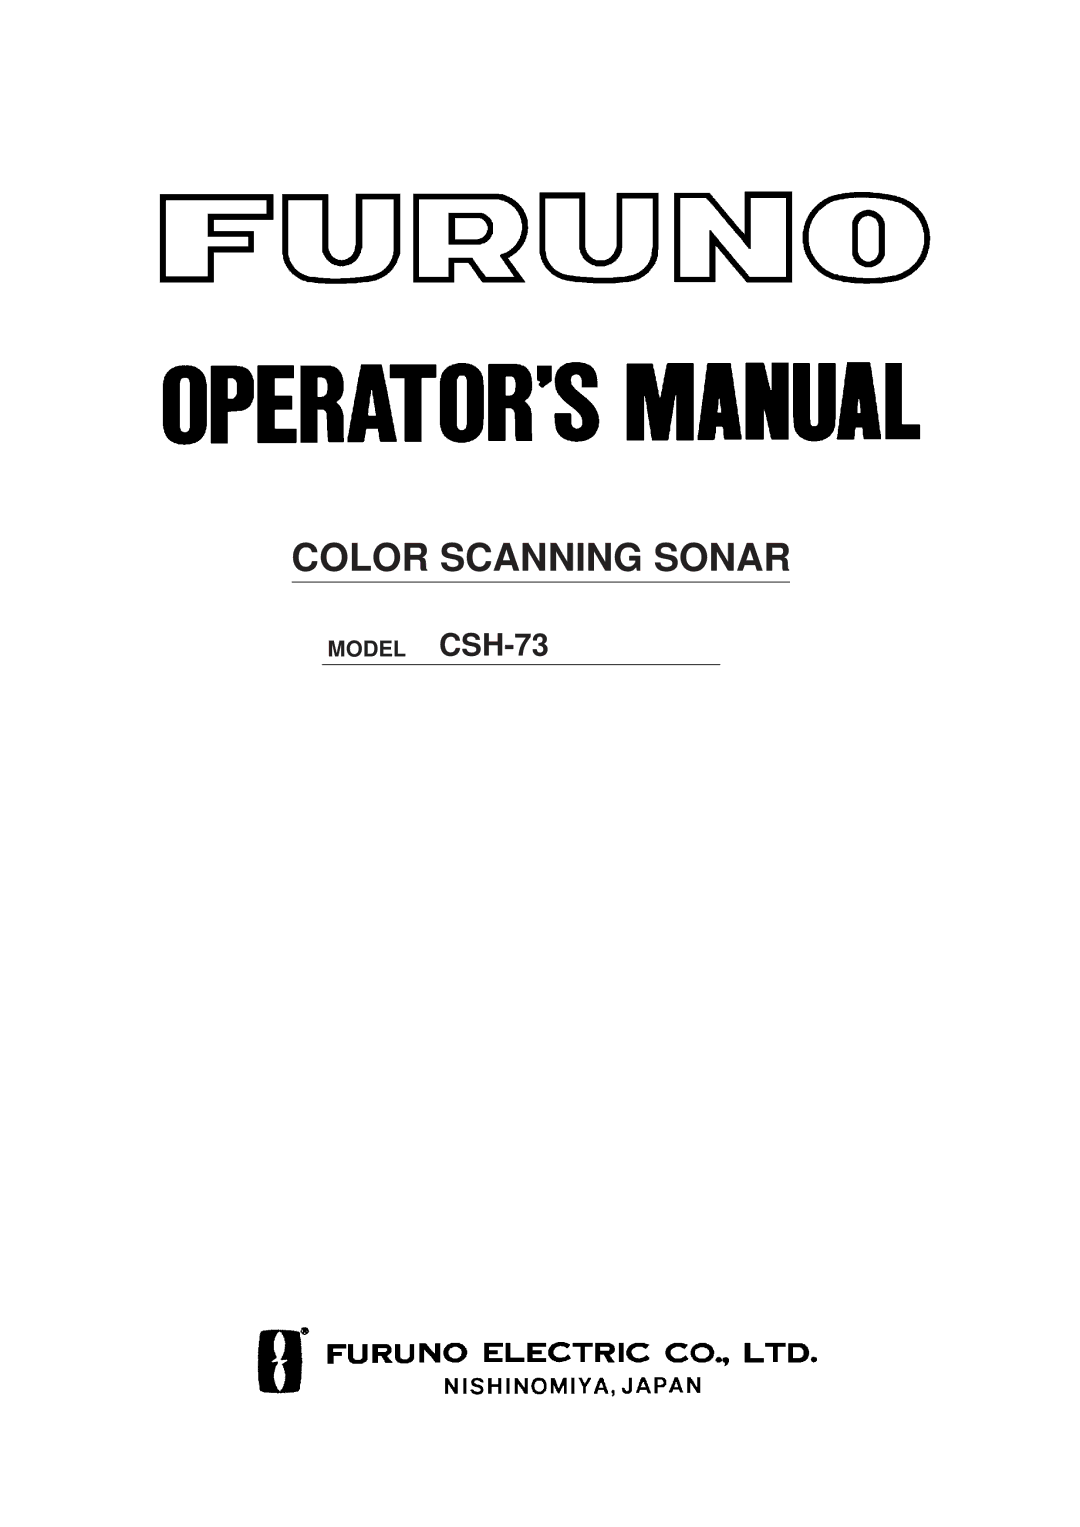 Furuno MODEL CSH-73 manual Color Scanning Sonar 